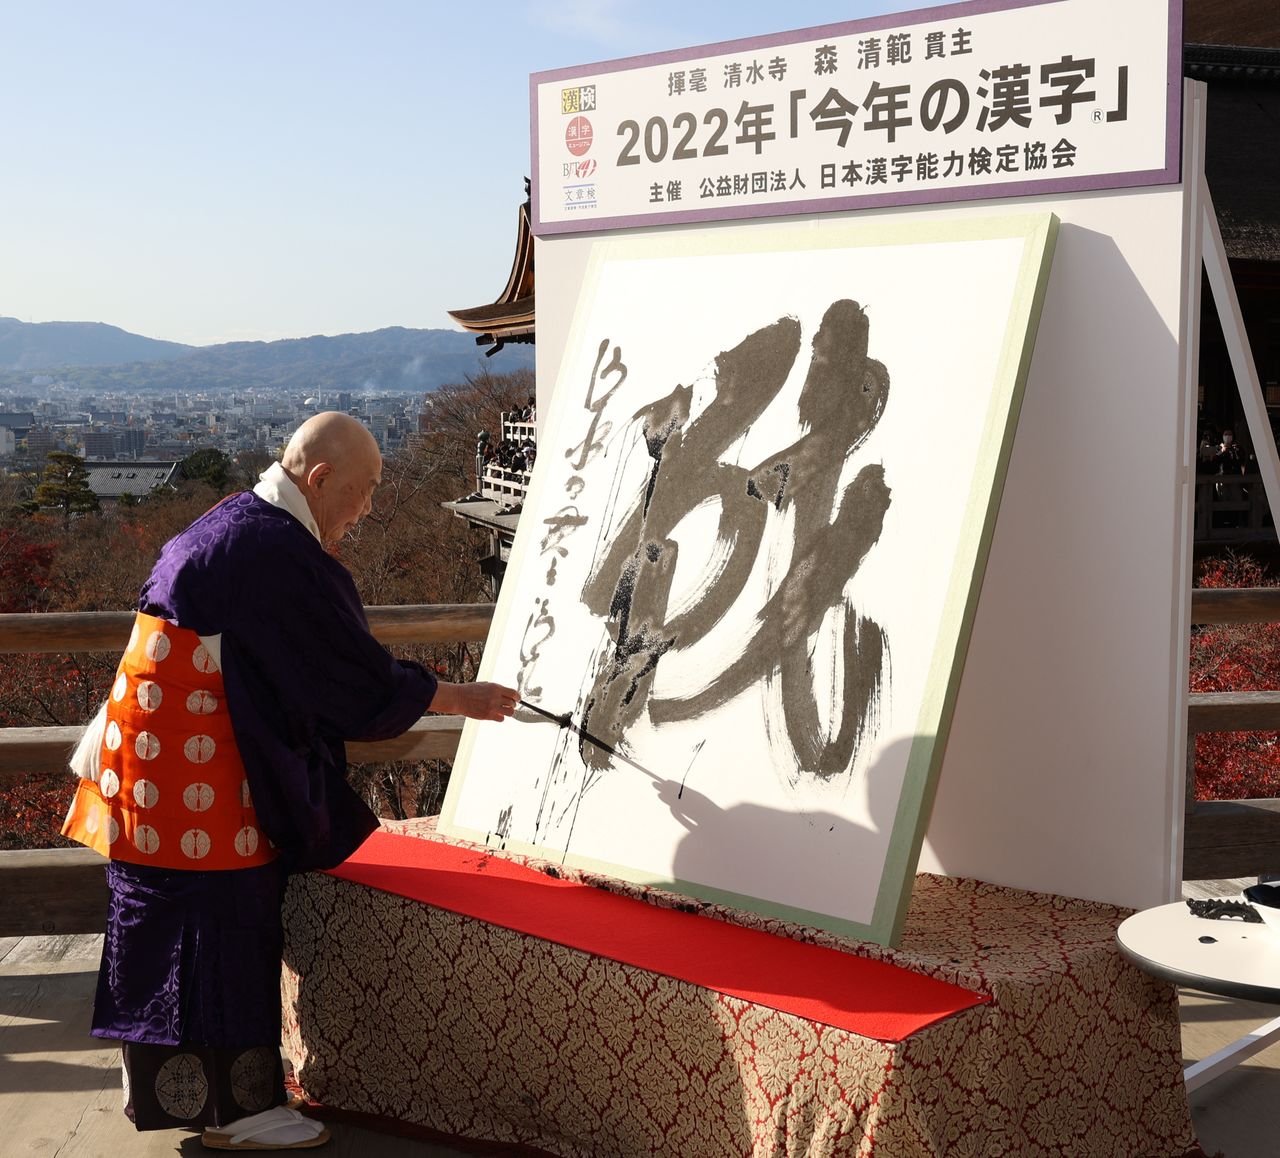 Настоятель храма Киёмидзу-дэра Мори Сэйхан изображает иероглиф 戦, выбранный знаком 2022 года, 12 декабря, город Киото, район Хигасияма (© Jiji)